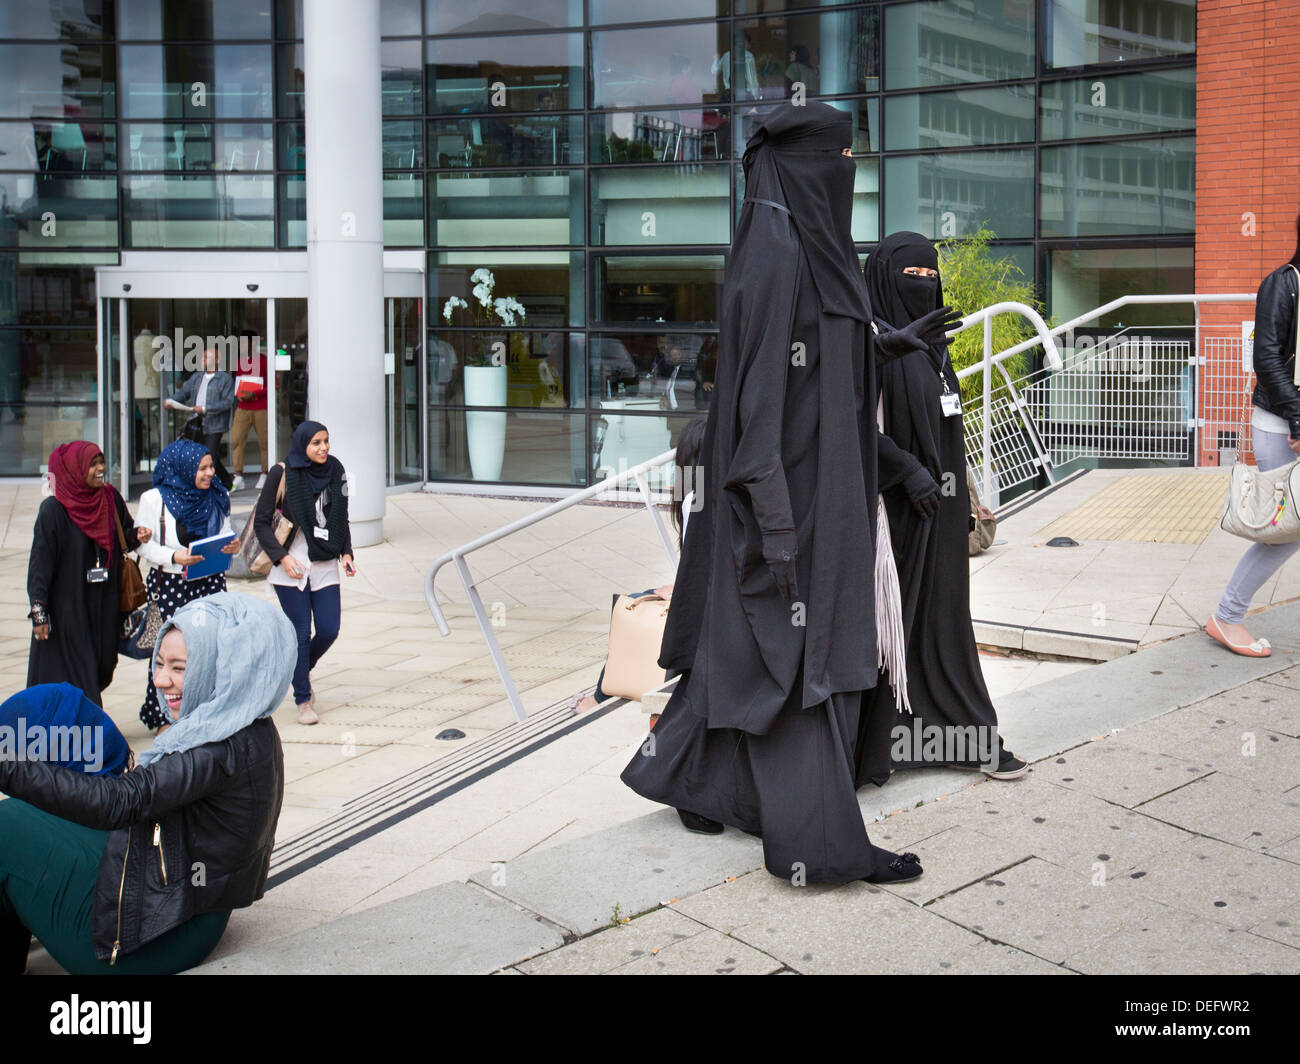 Deux étudiants vêtus de burqas contre à Birmingham, Royaume-Uni. Ils sont étudiants à la Birmingham Metropolitan College. Banque D'Images